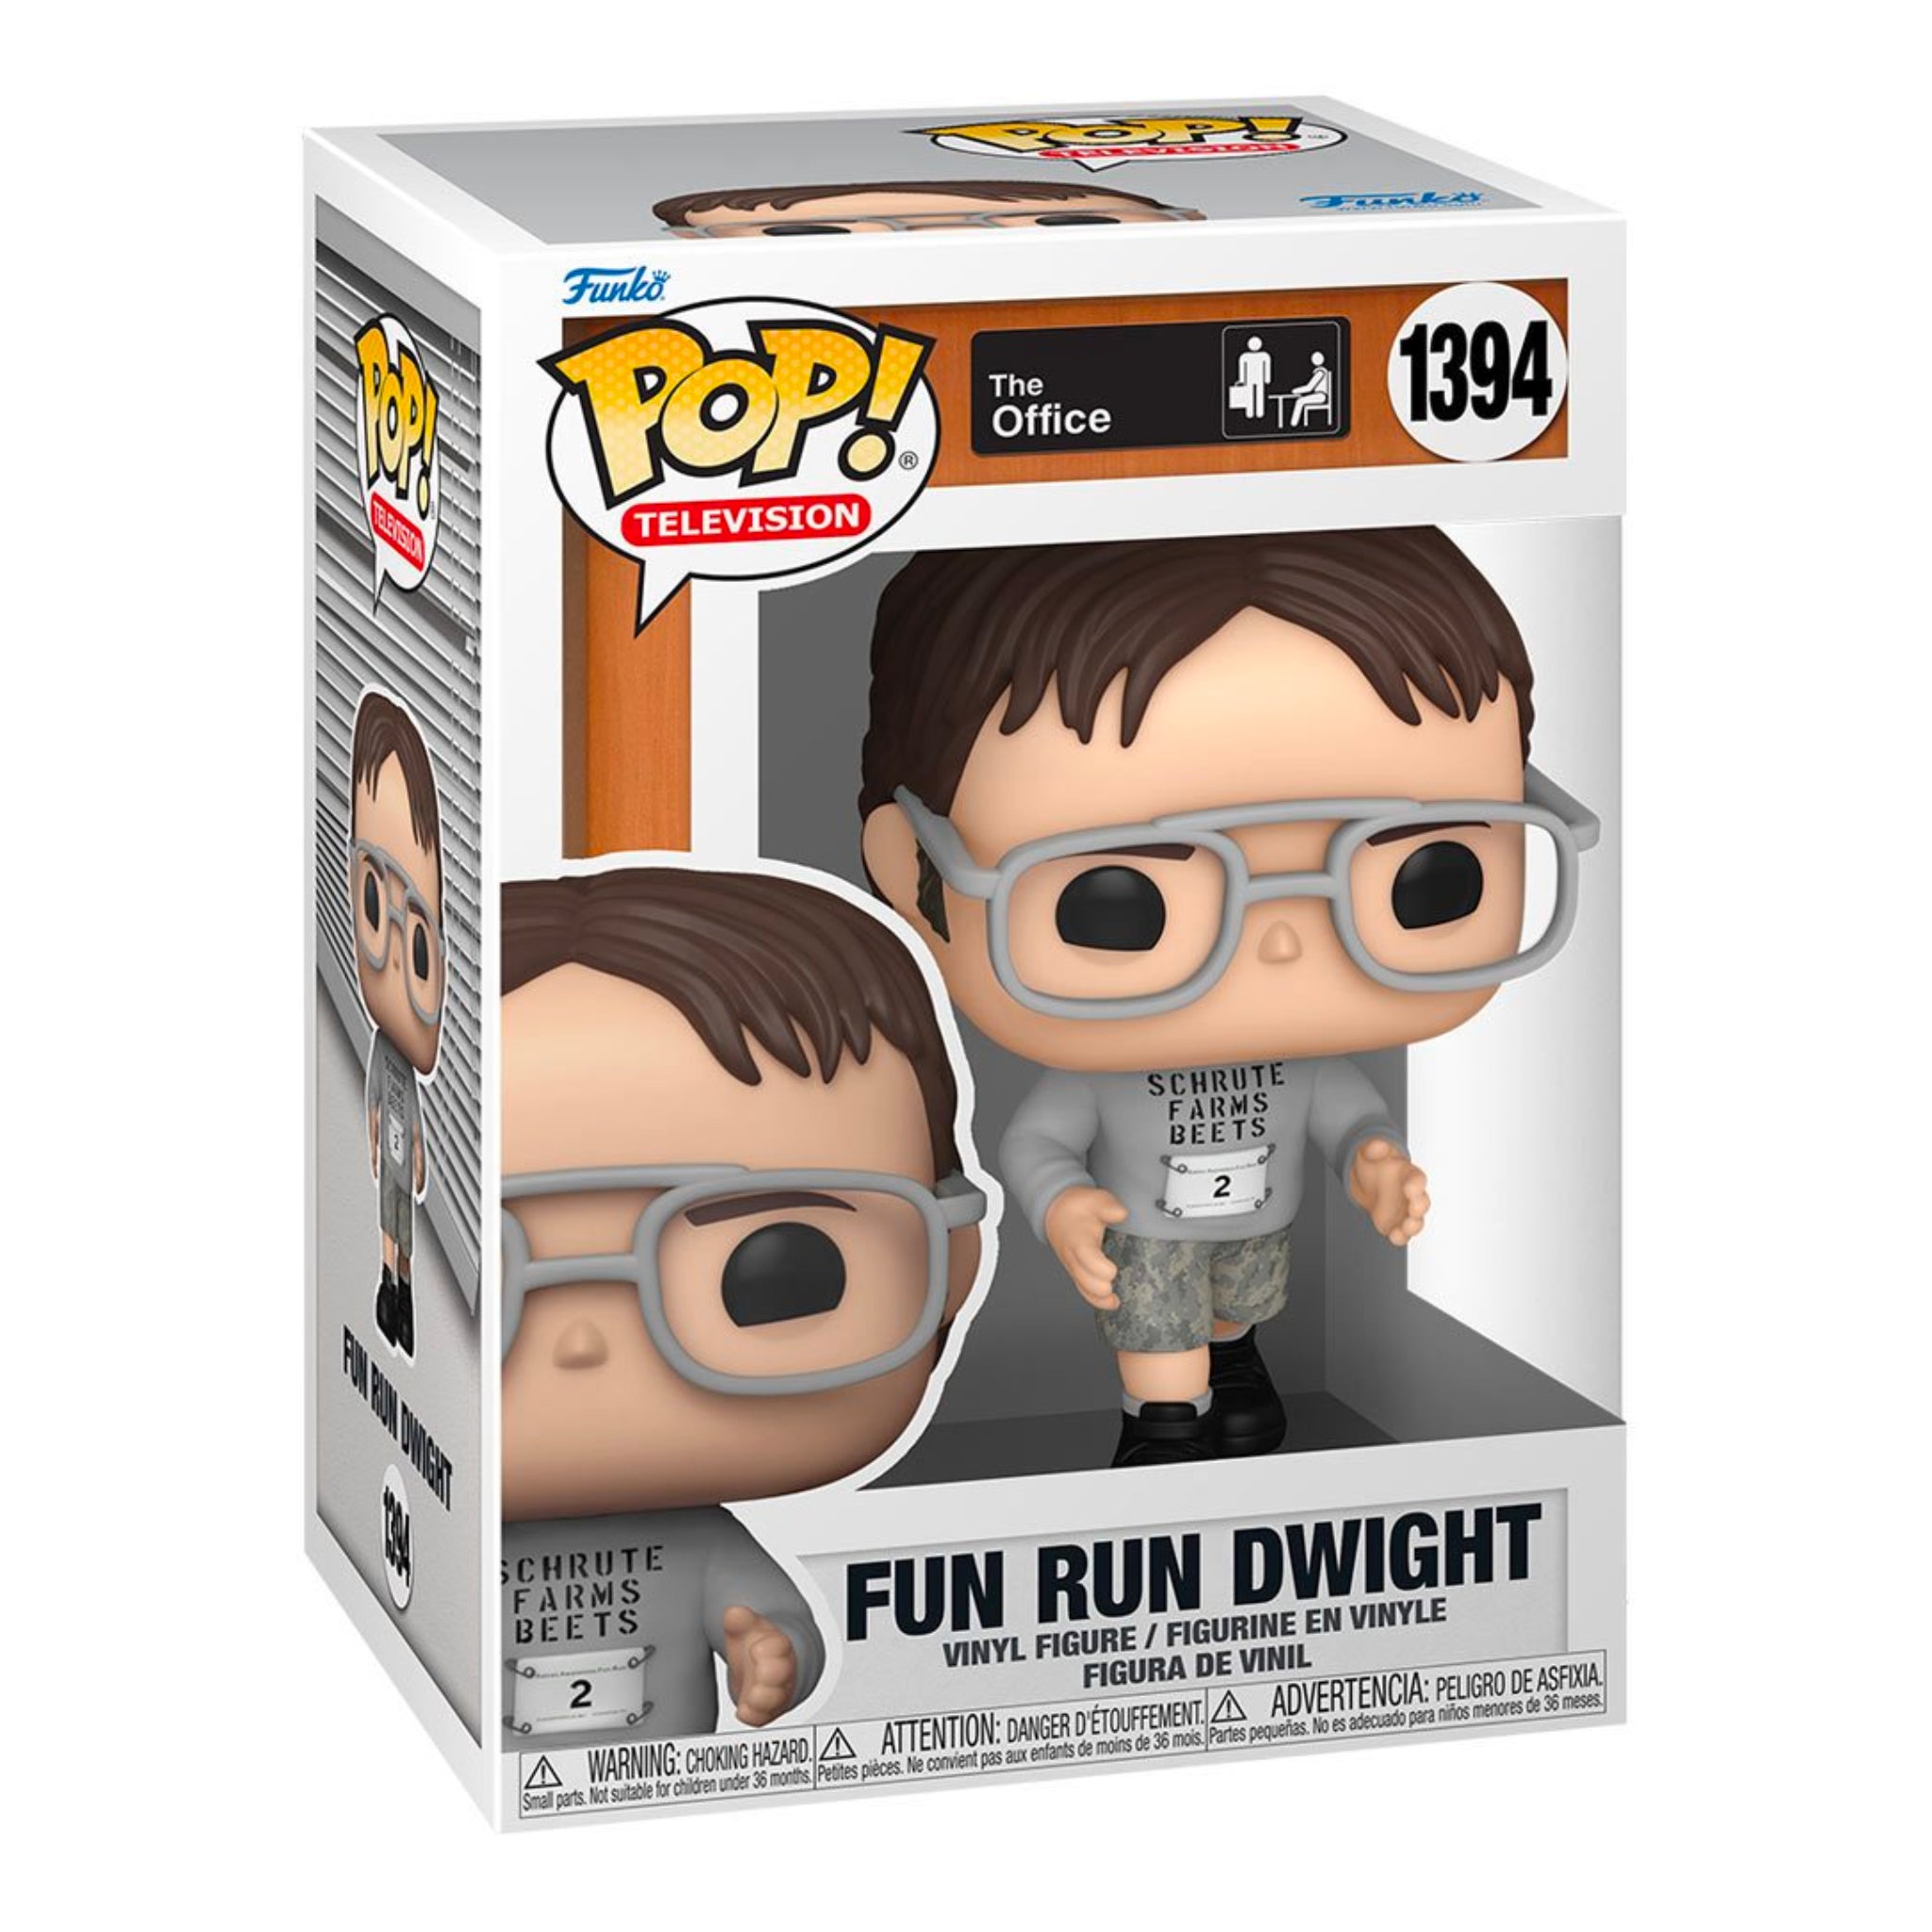 Fun Run Dwight Funko Pop!